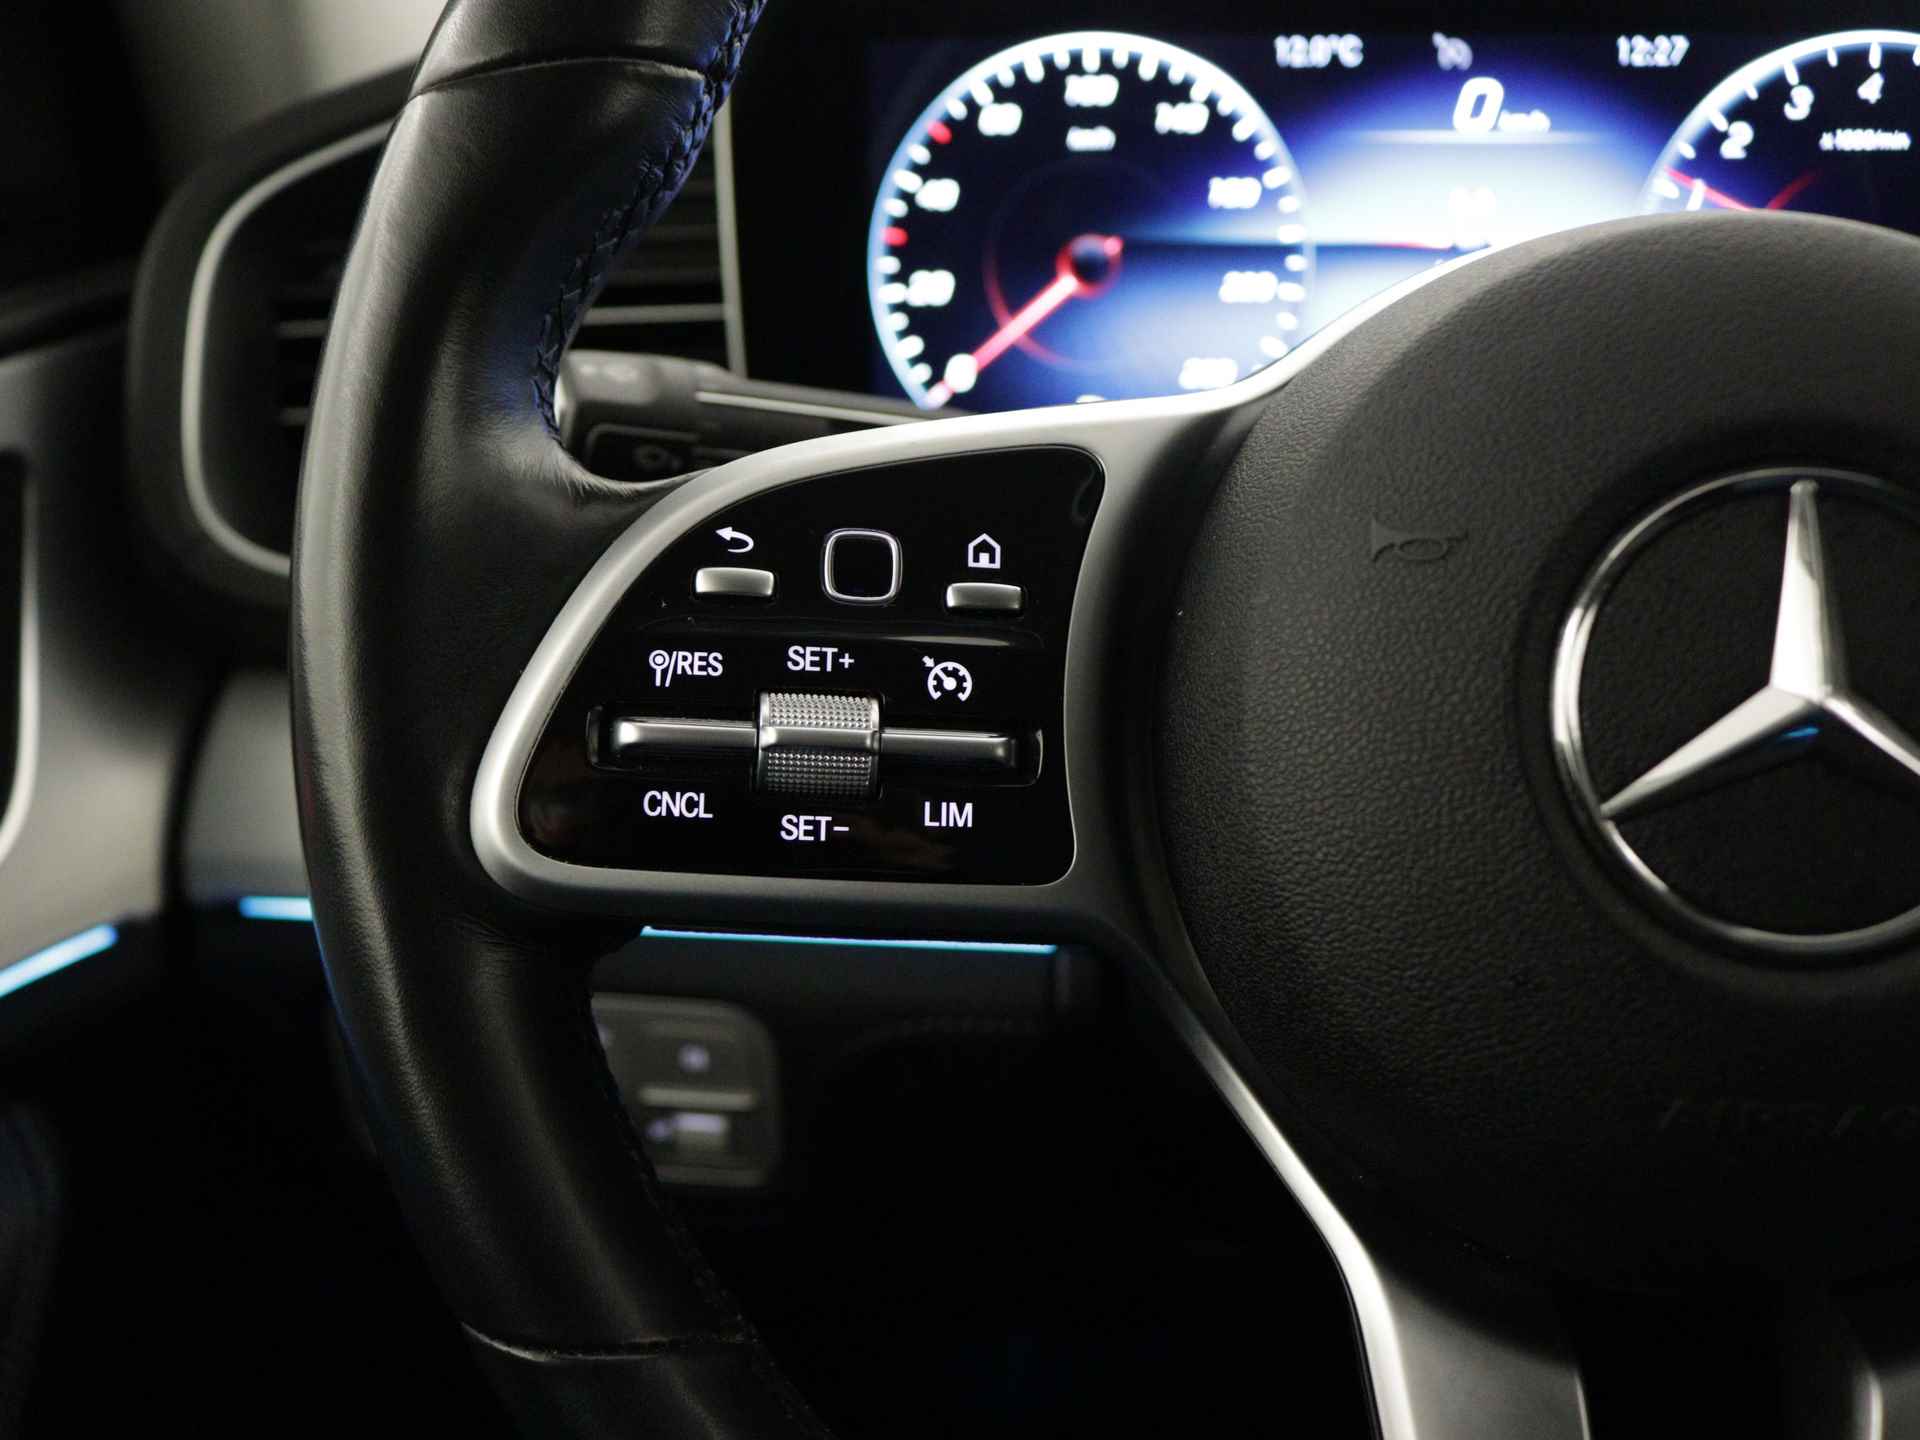 Mercedes-Benz GLE 350 e 4-MATIC AMG Nightpakket Limited 5 spaaks lichtmetalen velgen | Trekhaak | Airmatic | Treeplanken | Alarm klasse 3 |  Augmented Reality | sfeerverlichting | DAB | Parking support | inclusief 24 maanden MB Certified garantie voor europa - 22/45